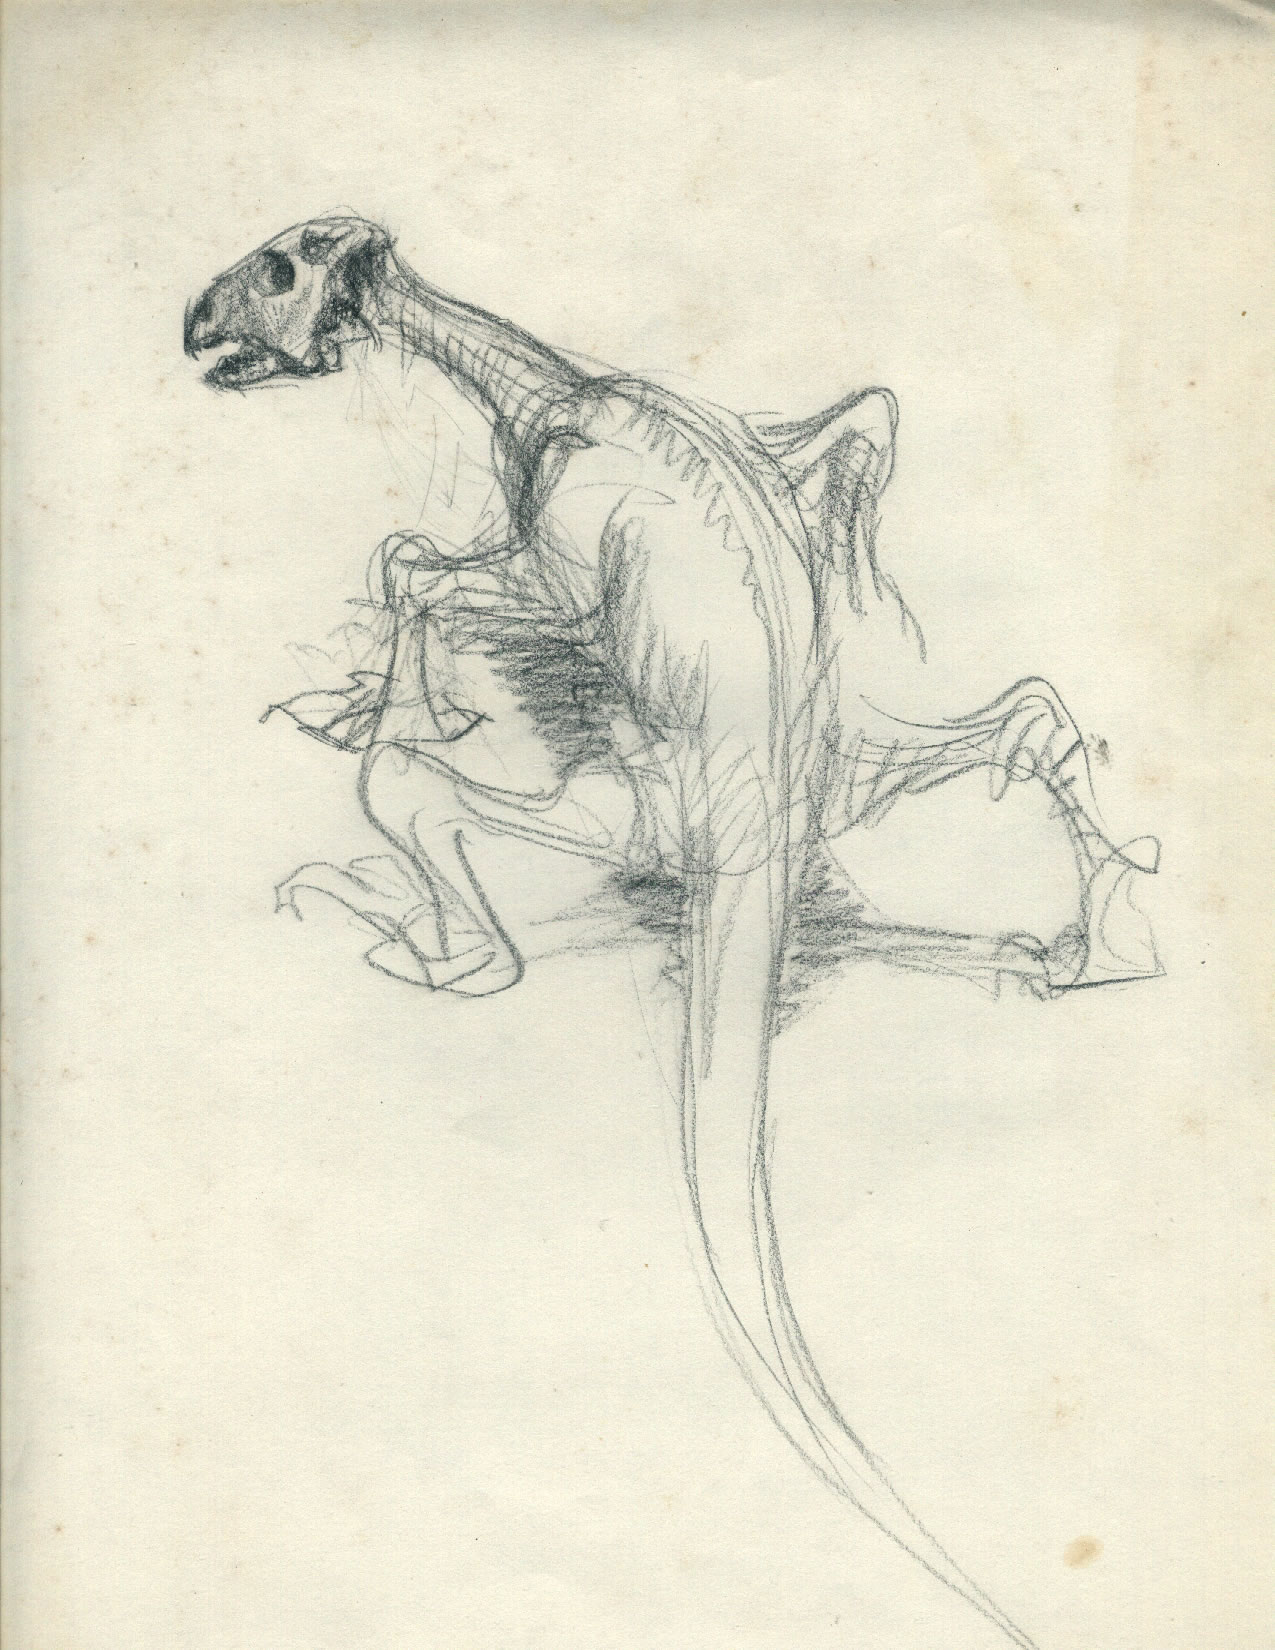 Sketching at Museum of Natural History